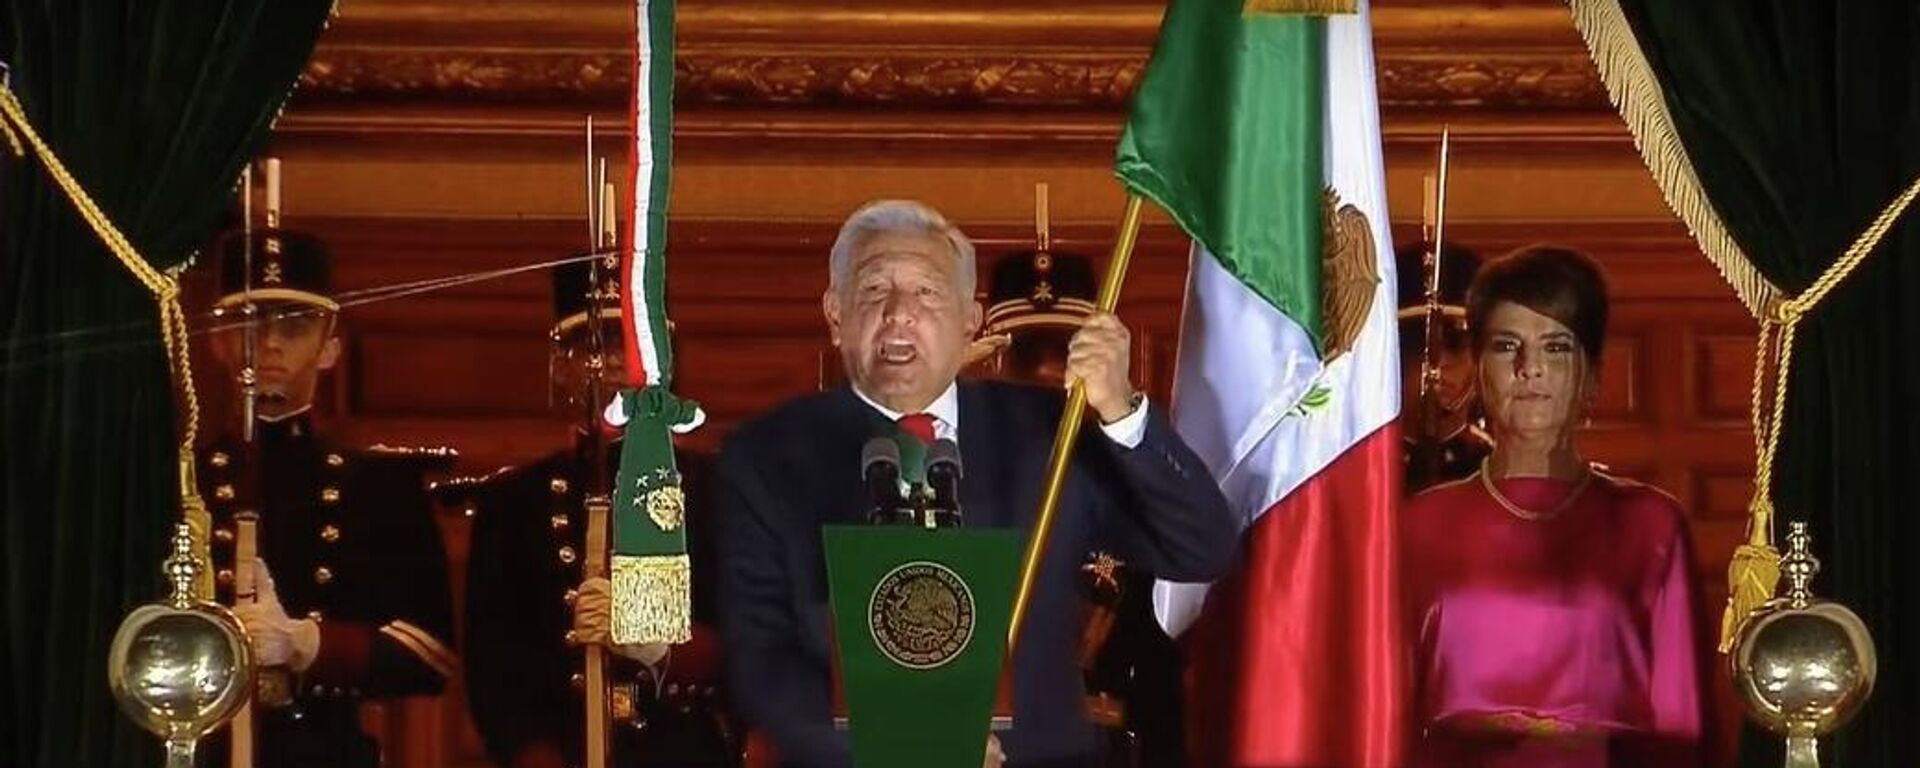 El presidente mexicano Andrés Manuel López Obrador en el Grito de Independencia, el 15 de septiembre de 2022 - Sputnik Mundo, 1920, 16.09.2022